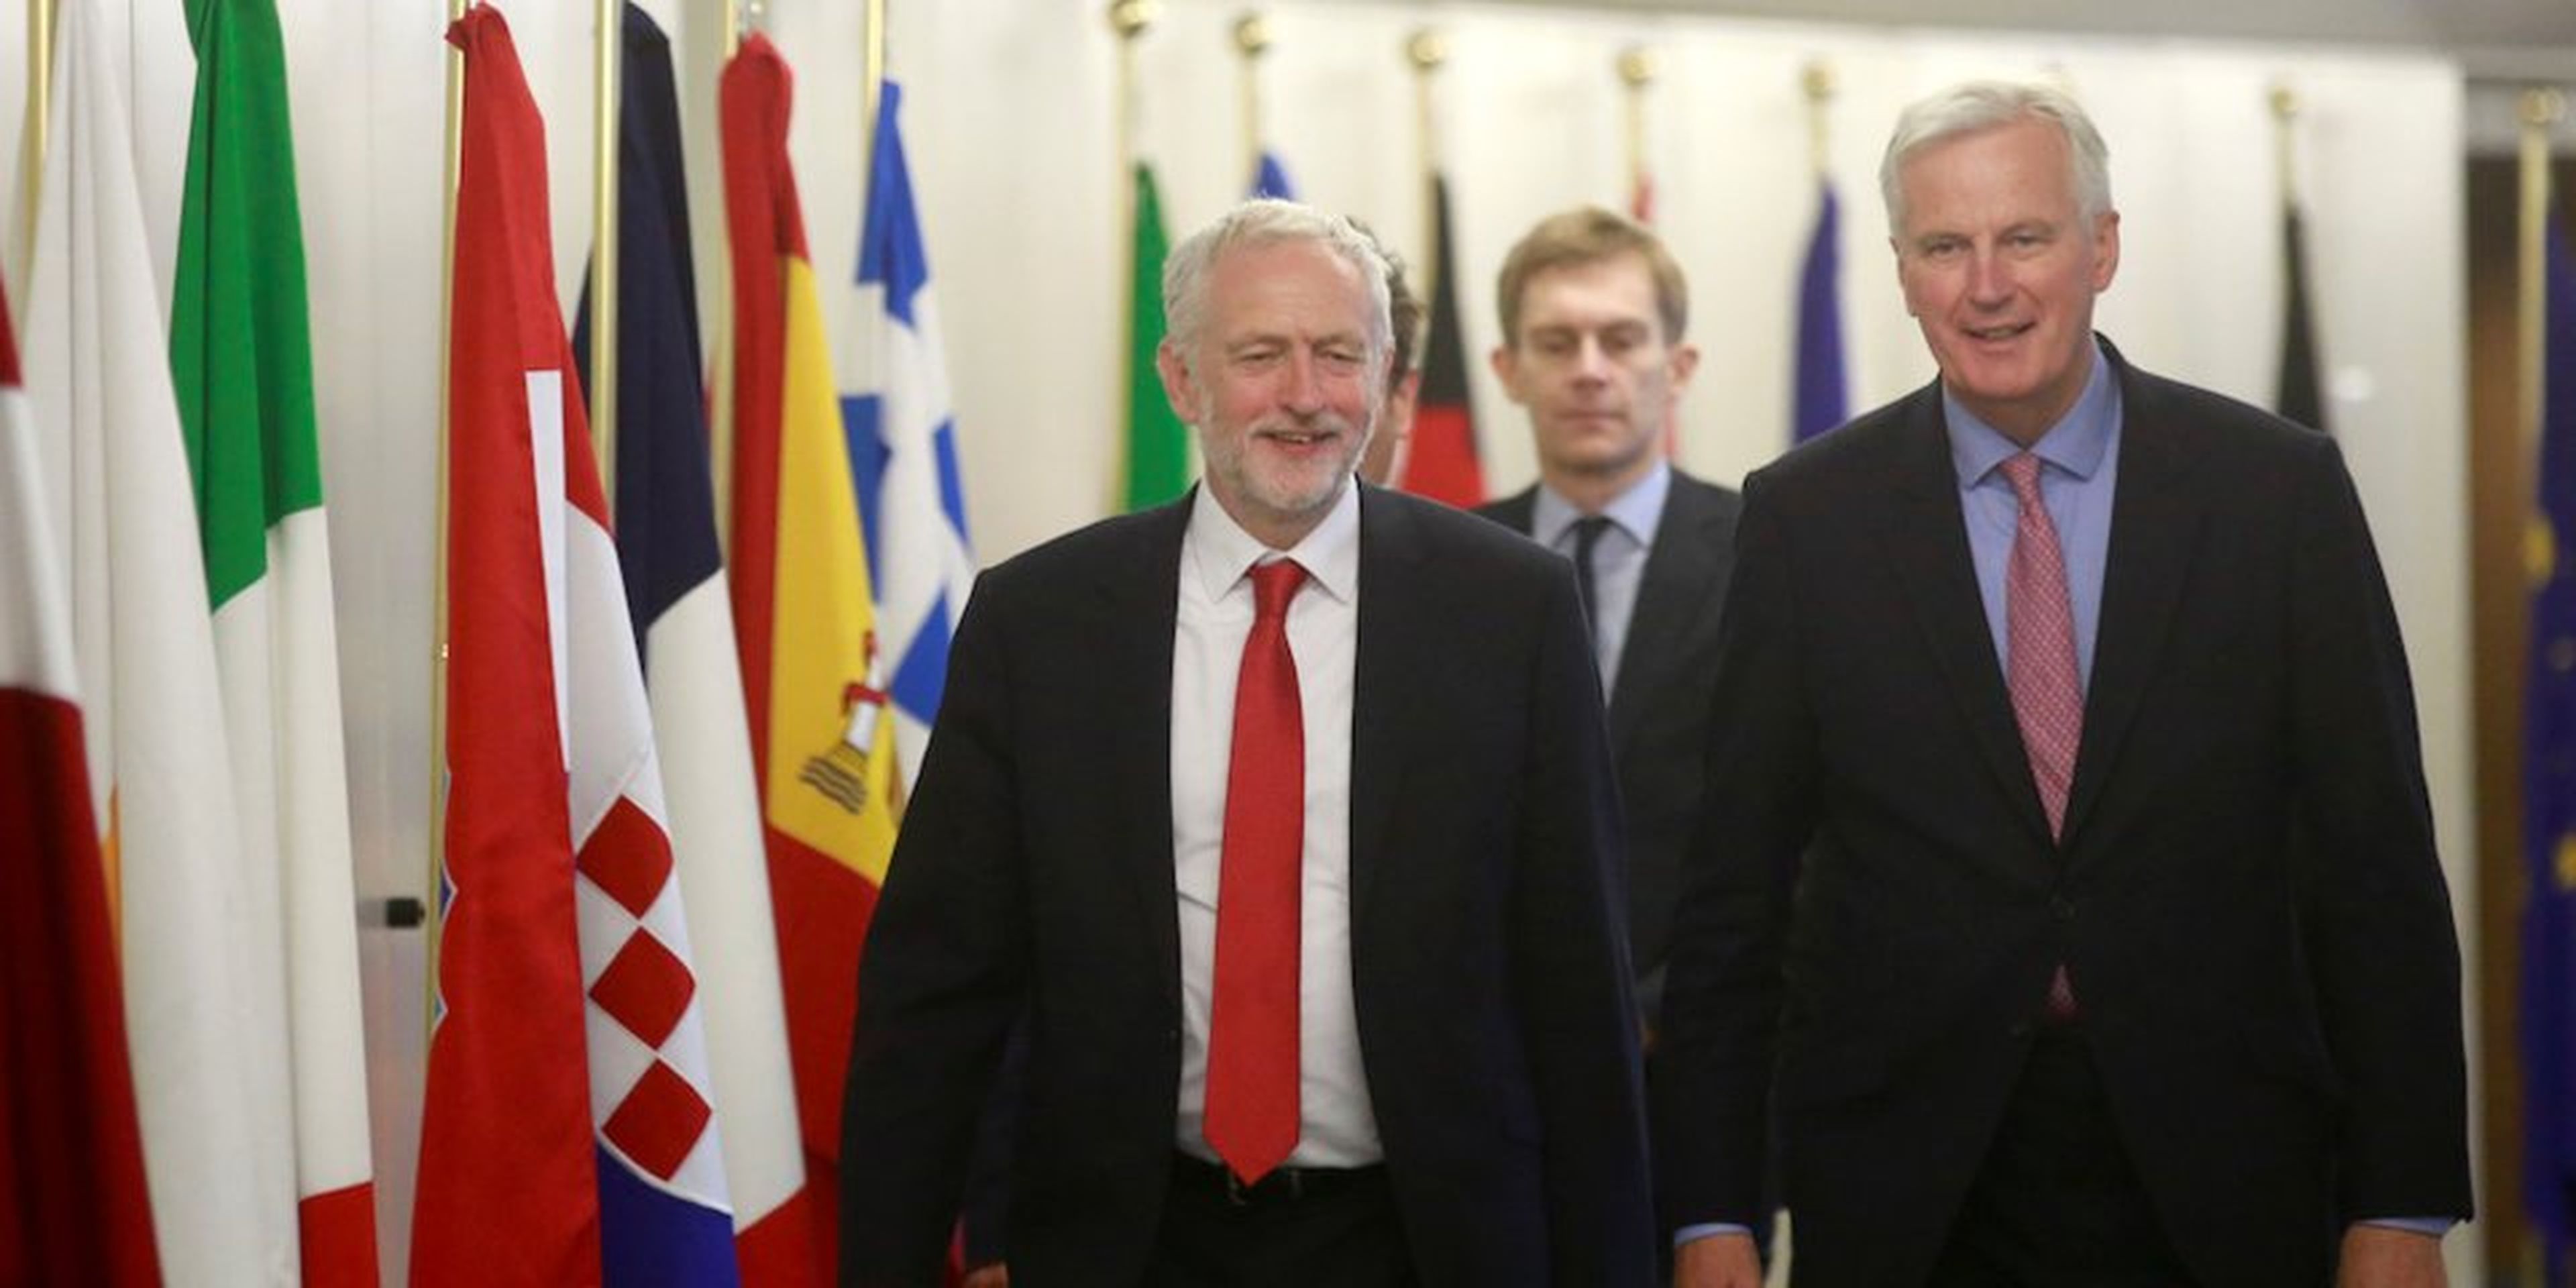 El líder del Partido Laborista, Jeremy Corbyn, llega a una reunión con el jefe negociador de la Unión Europea para el Brexit, Michel Barnier, en la sede de la Comisión Europea en Bruselas, Bélgica, el 13 de julio de 2017.